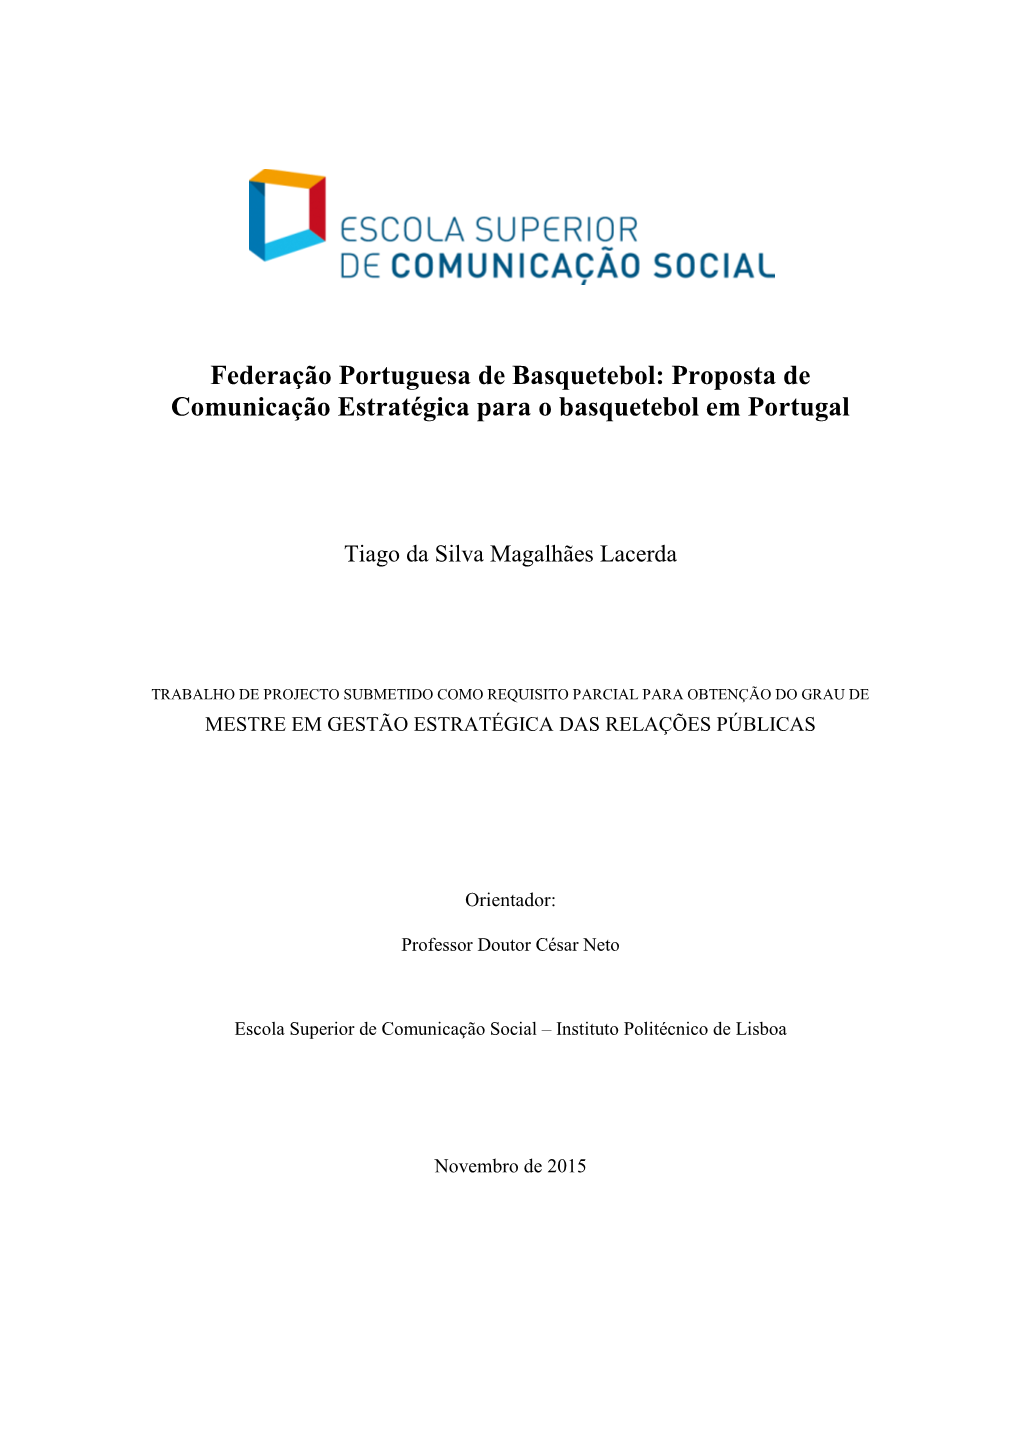 Federação Portuguesa De Basquetebol: Proposta De Comunicação Estratégica Para O Basquetebol Em Portugal